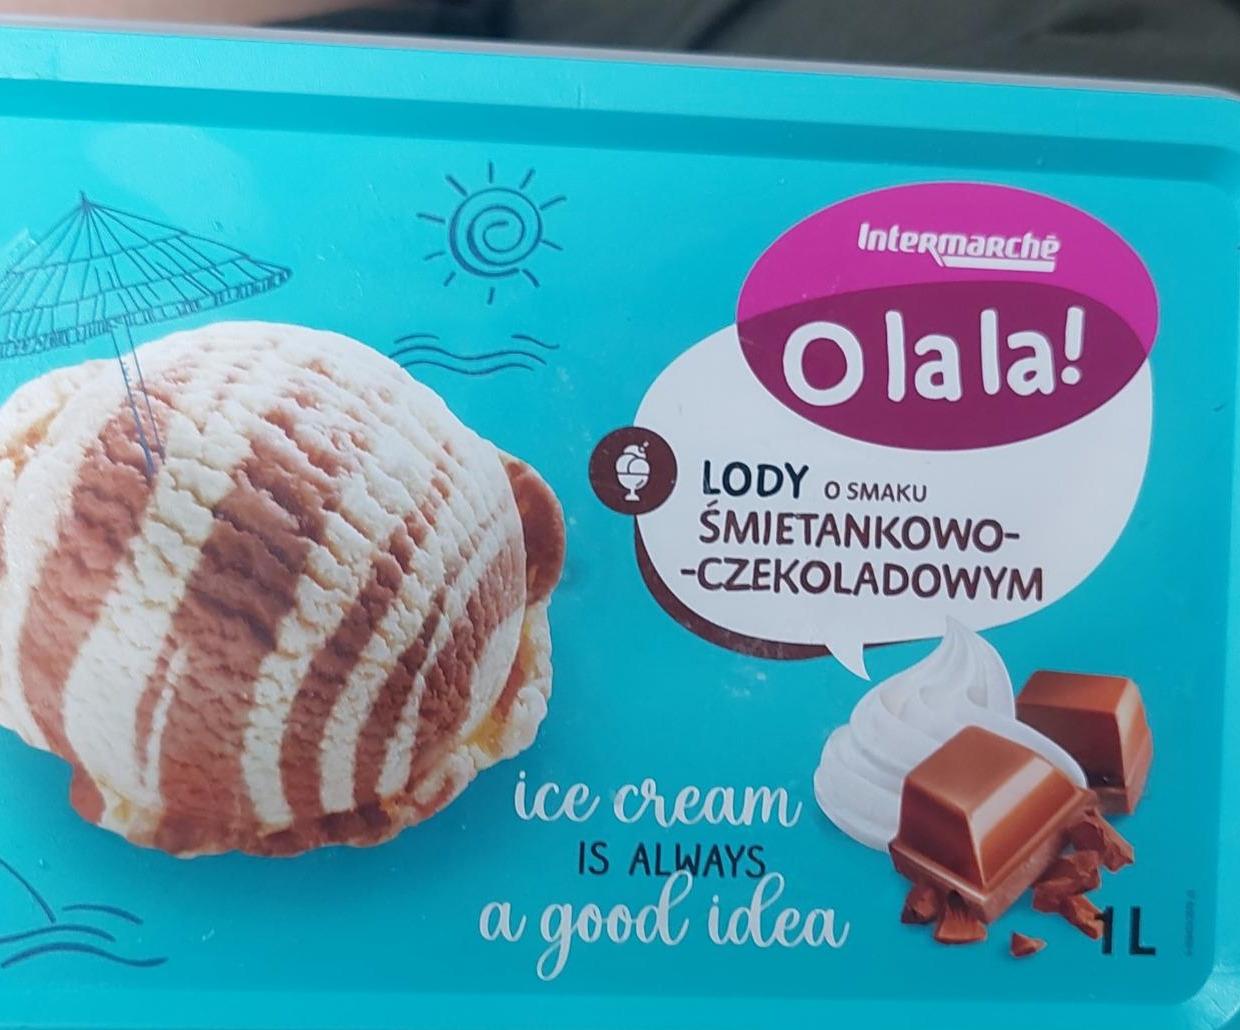 Zdjęcia - O lala lody o smaku śmietankowo czekoladowym Intermarche